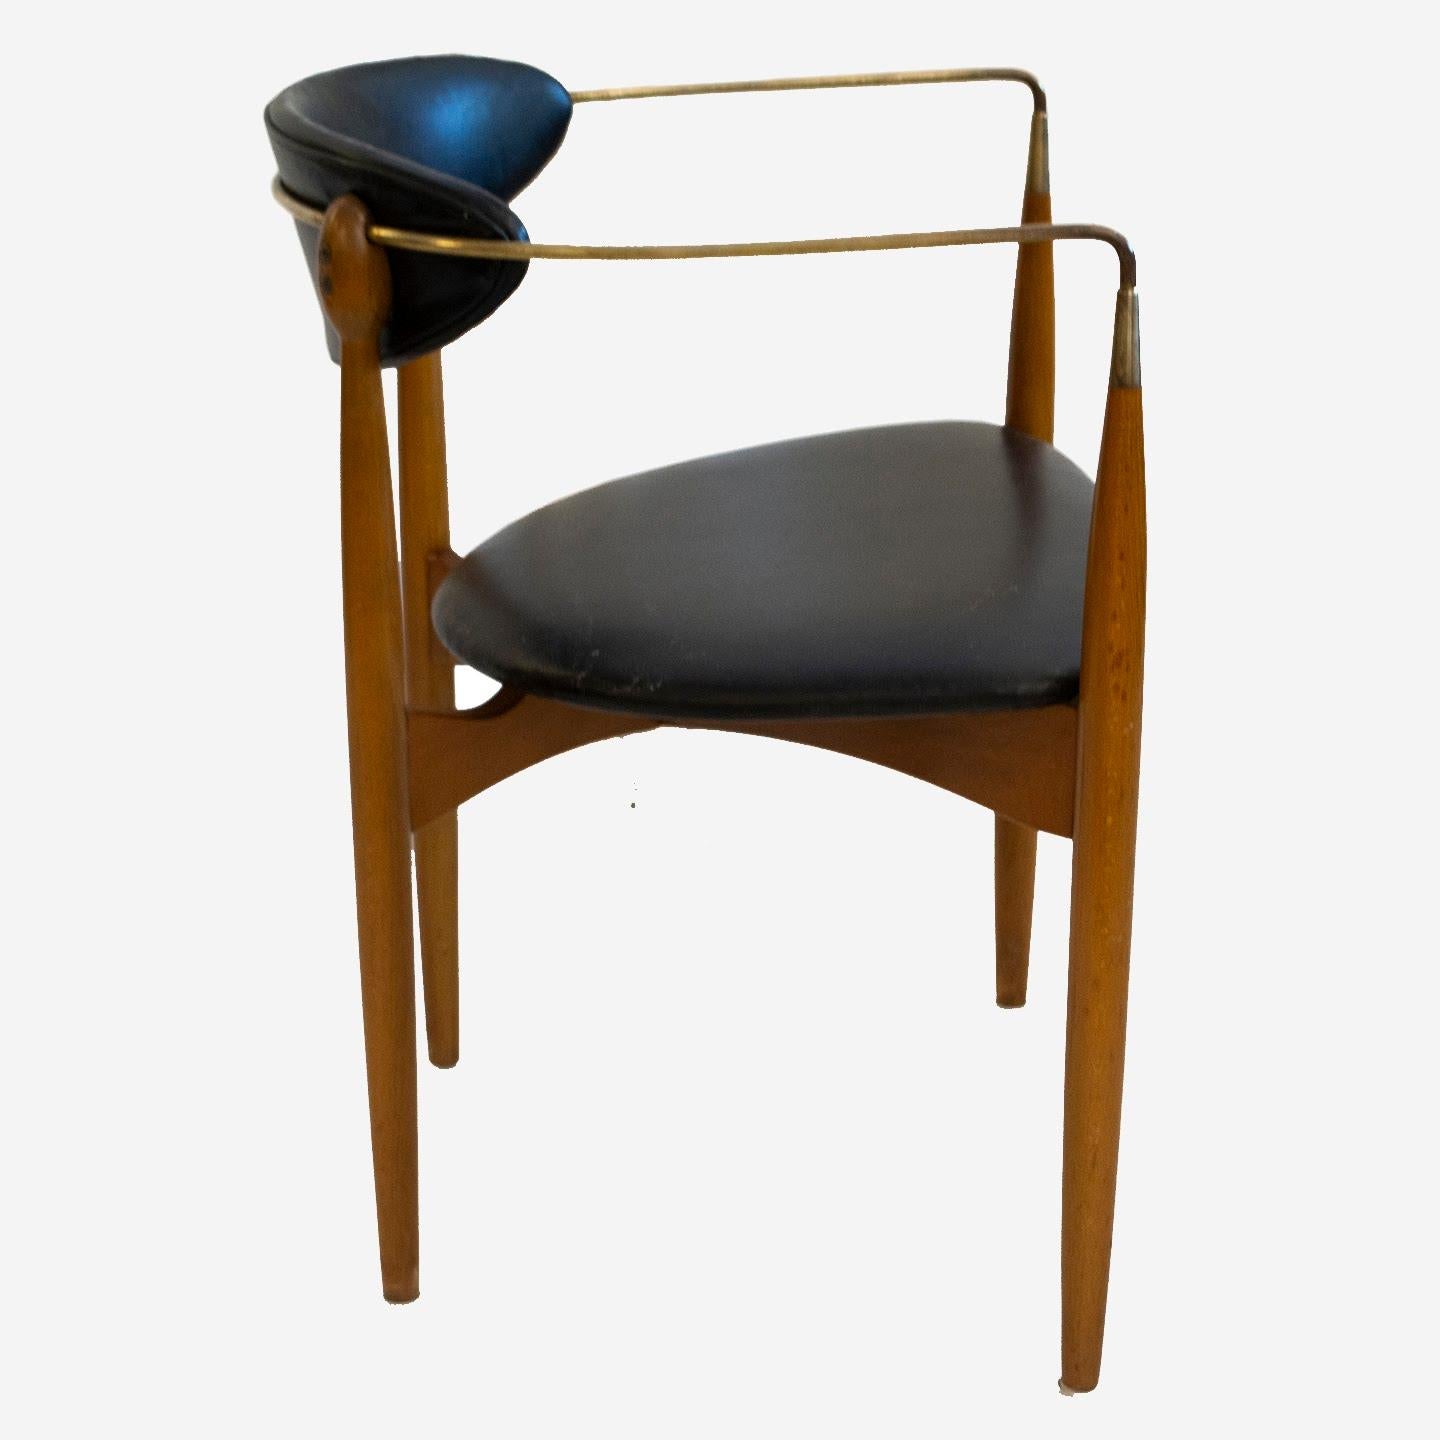 Dieser Dan Johnson Viscount Stuhl ist in seinem ursprünglichen Zustand. Es hat eine schöne Patina und hat seine strukturelle Integrität aufgrund seiner feinen Verarbeitung erhalten. Dieser seltene, mit schwarzem Original-Vinyl gepolsterte Stuhl